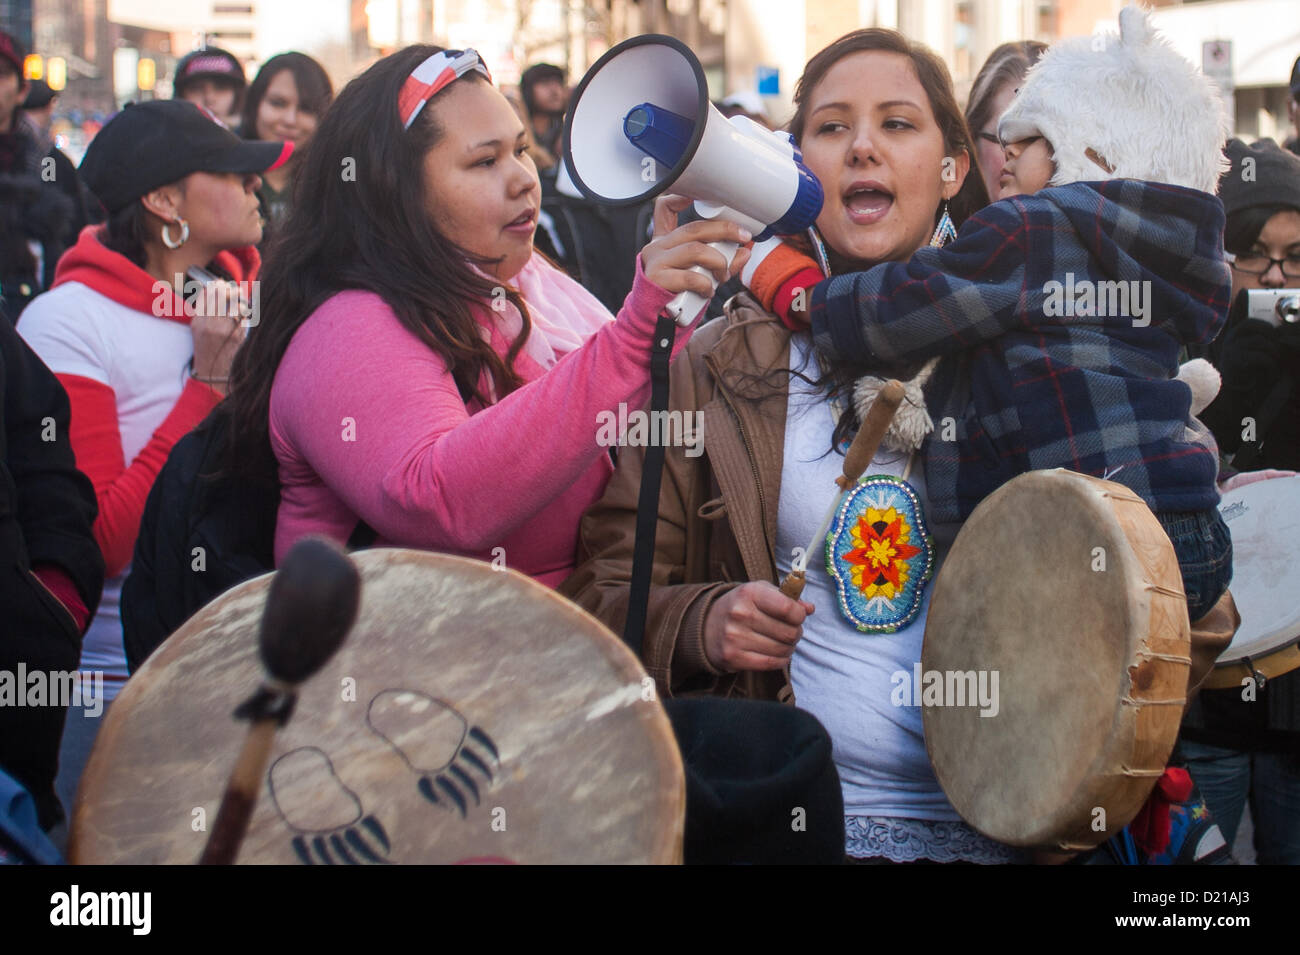 London Ontario, Kanada - 10. Januar 2013. Die Leerlauf nicht mehr Bewegung statt einen flash Mob-Protest an den Ecken der Dundas und Richmond Street in London im Laufe der Stunde Mittag. Eine geschätzte 600-700 Menschen versammelten sich auf dem Bürgersteig und nahm bis zur Kreuzung, wenn die Uhr 12:00 schlug. Der Protest dauerte Approximatley 45 Minuten gab es in denen Kreis tanzen, Trommeln, singen und reden der First Nations und First Nations Einzelpersonen. Das Publikum war von jung und alt Demonstranten zeigt Unterstützung für die Bewegung gebildet. Stockfoto